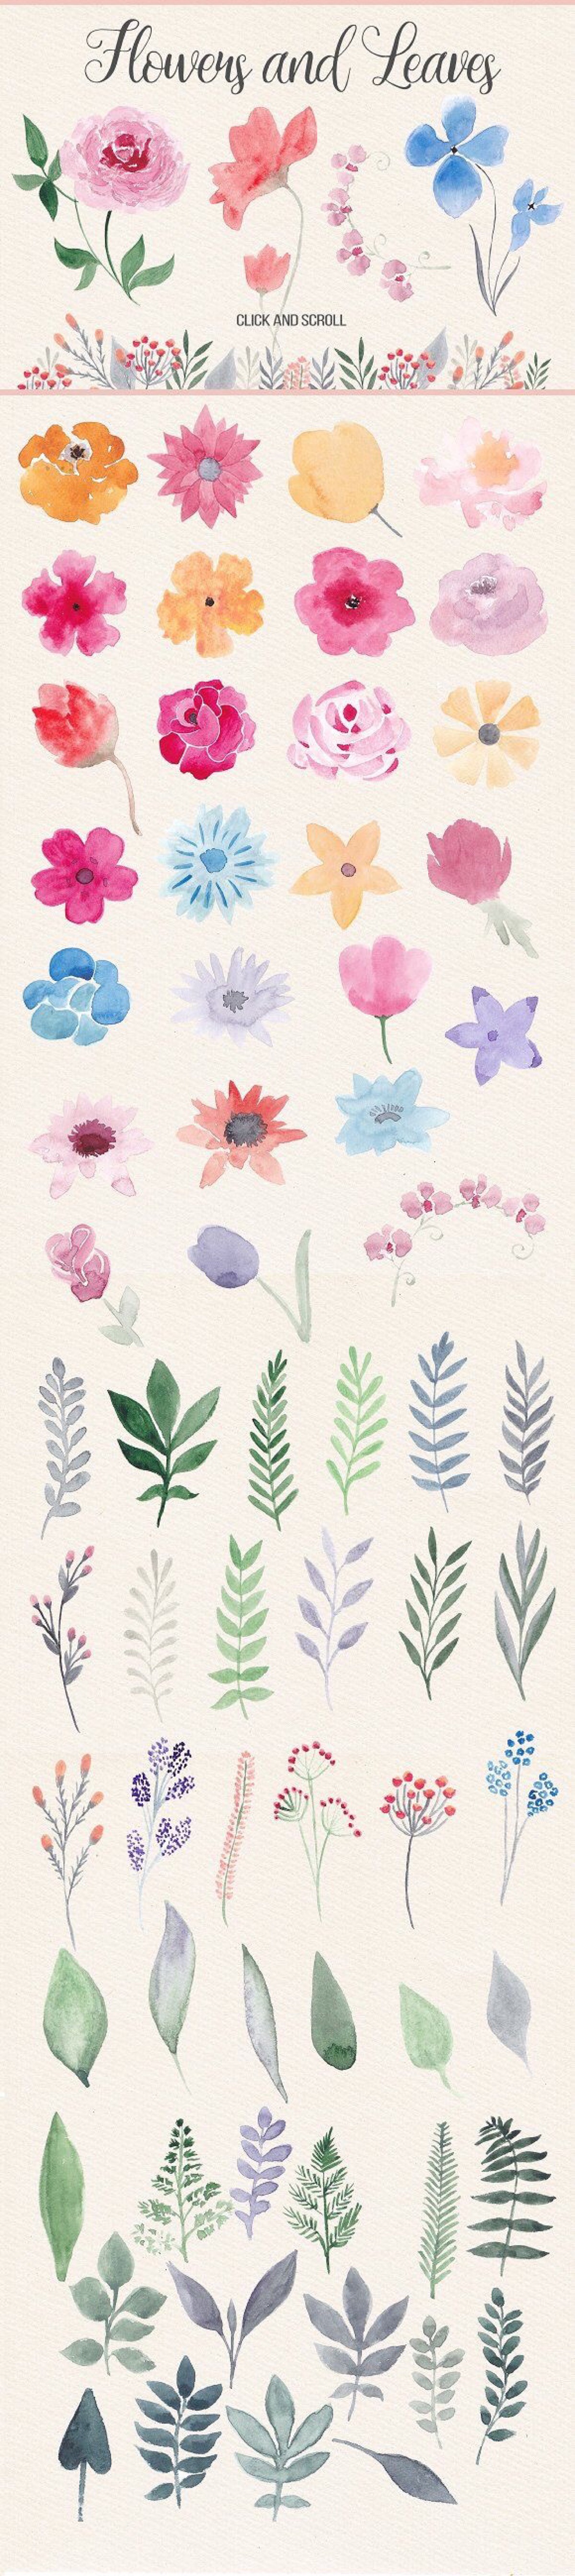 [手帐素材]手绘水粉-花朵和叶子(via pinterest)